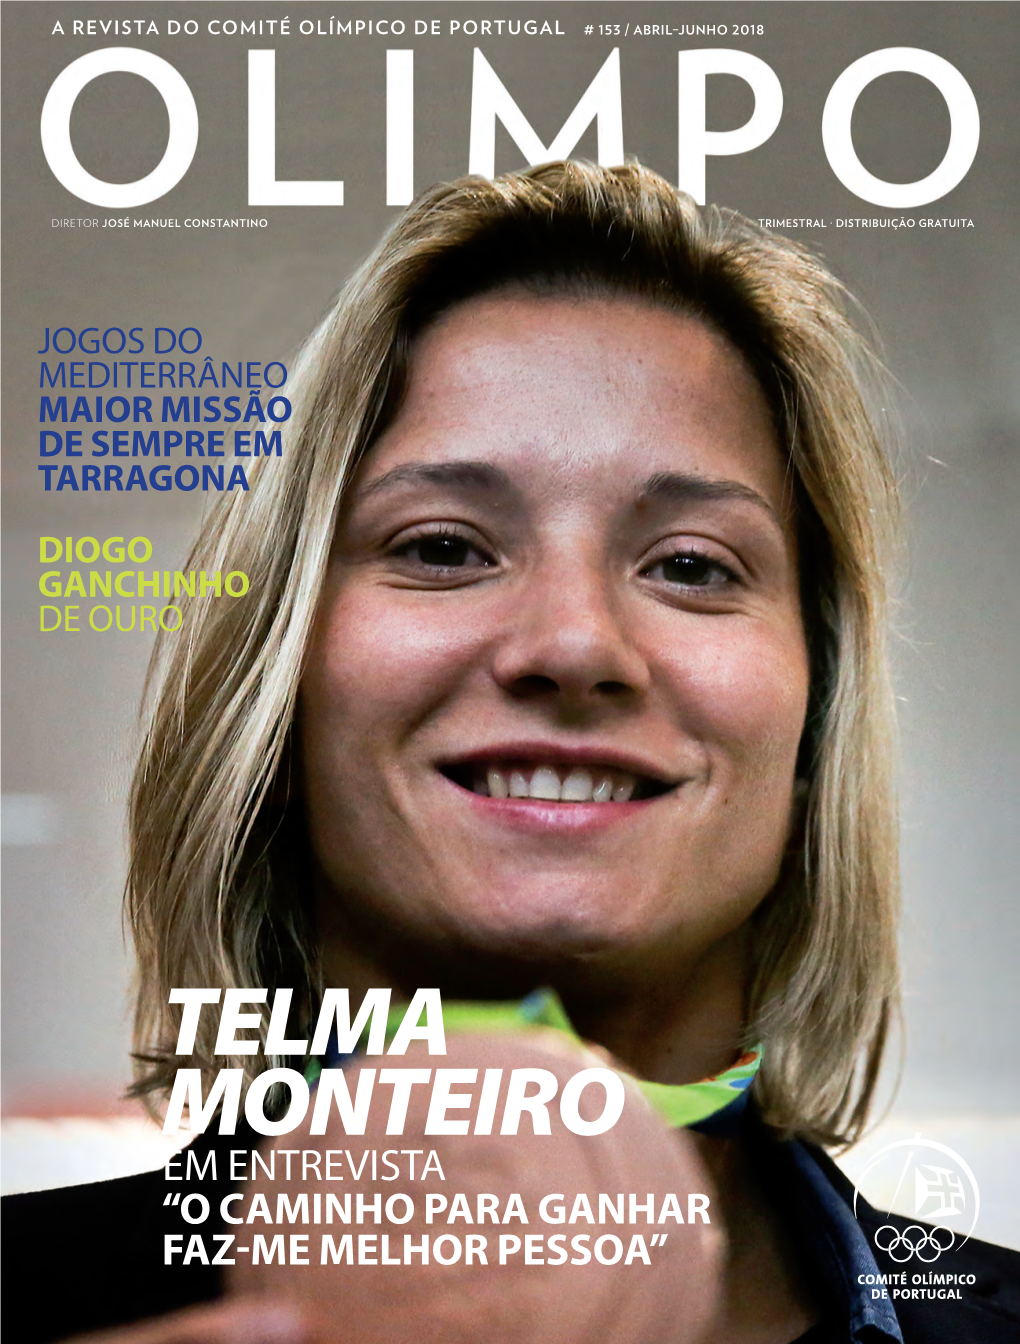 Telma Monteiro Em Entrevista “O Caminho Para Ganhar Faz-Me Melhor Pessoa”